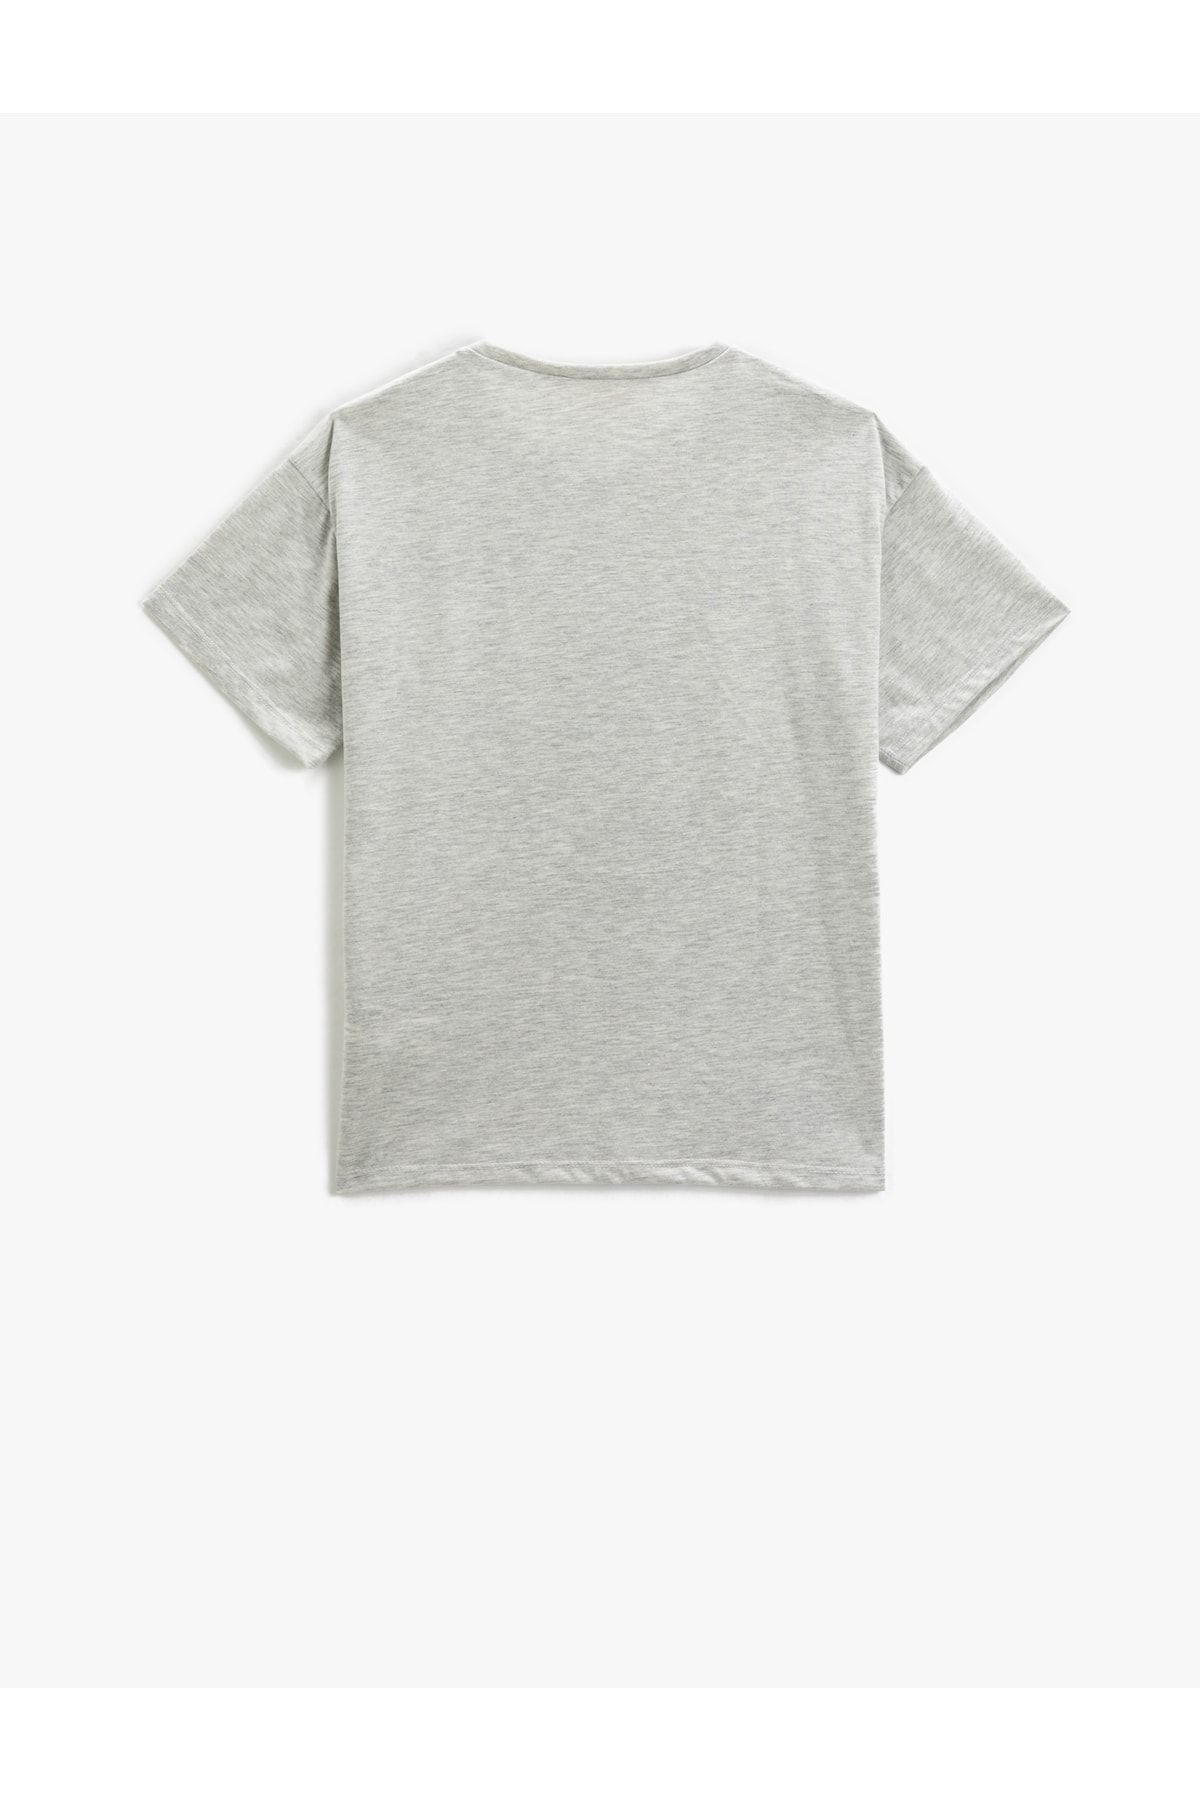 Koton تی شرت آستین کوتاه یقه نخی چاپ شده